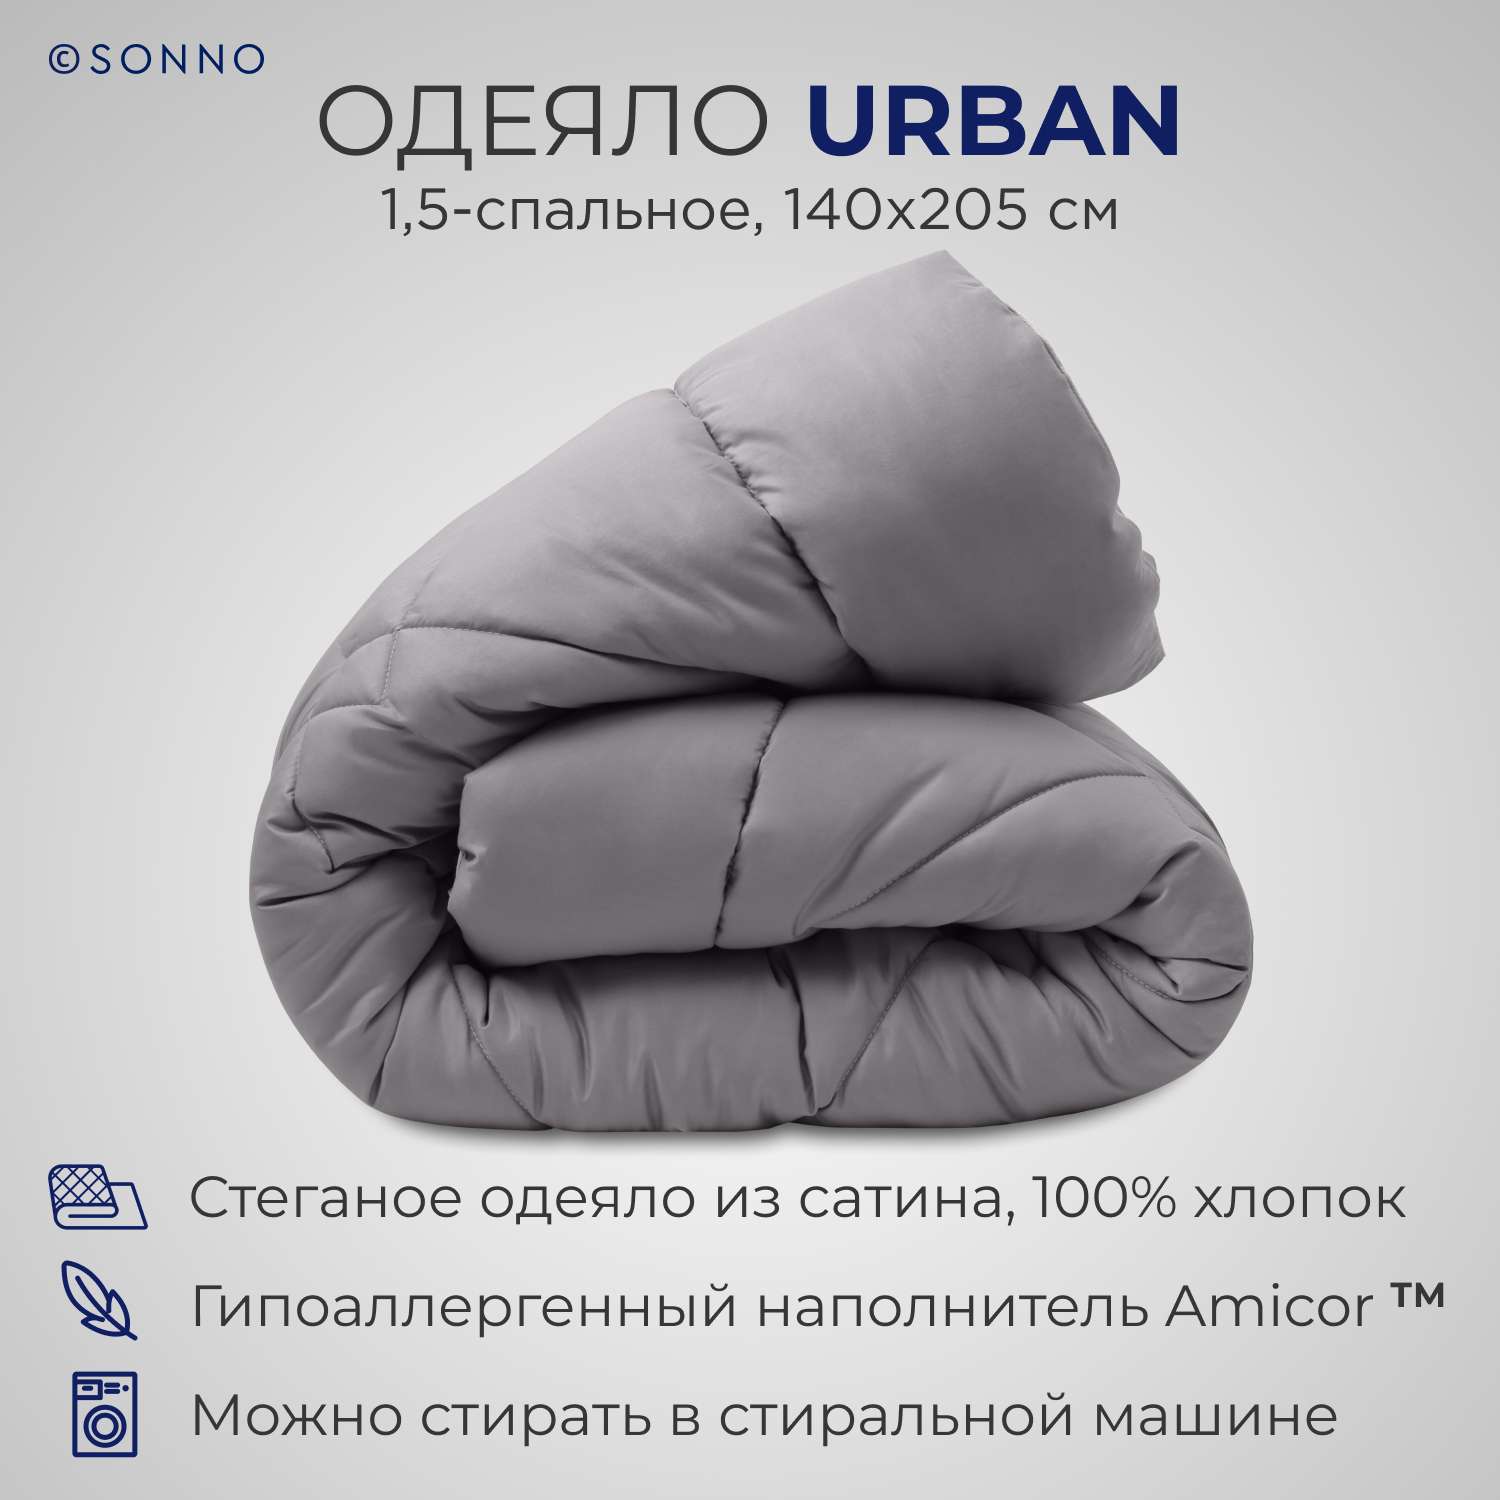 Одеяло SONNO URBAN 1.5-спальный 140x205 с наполнителем Amicor Матовый графит - фото 1